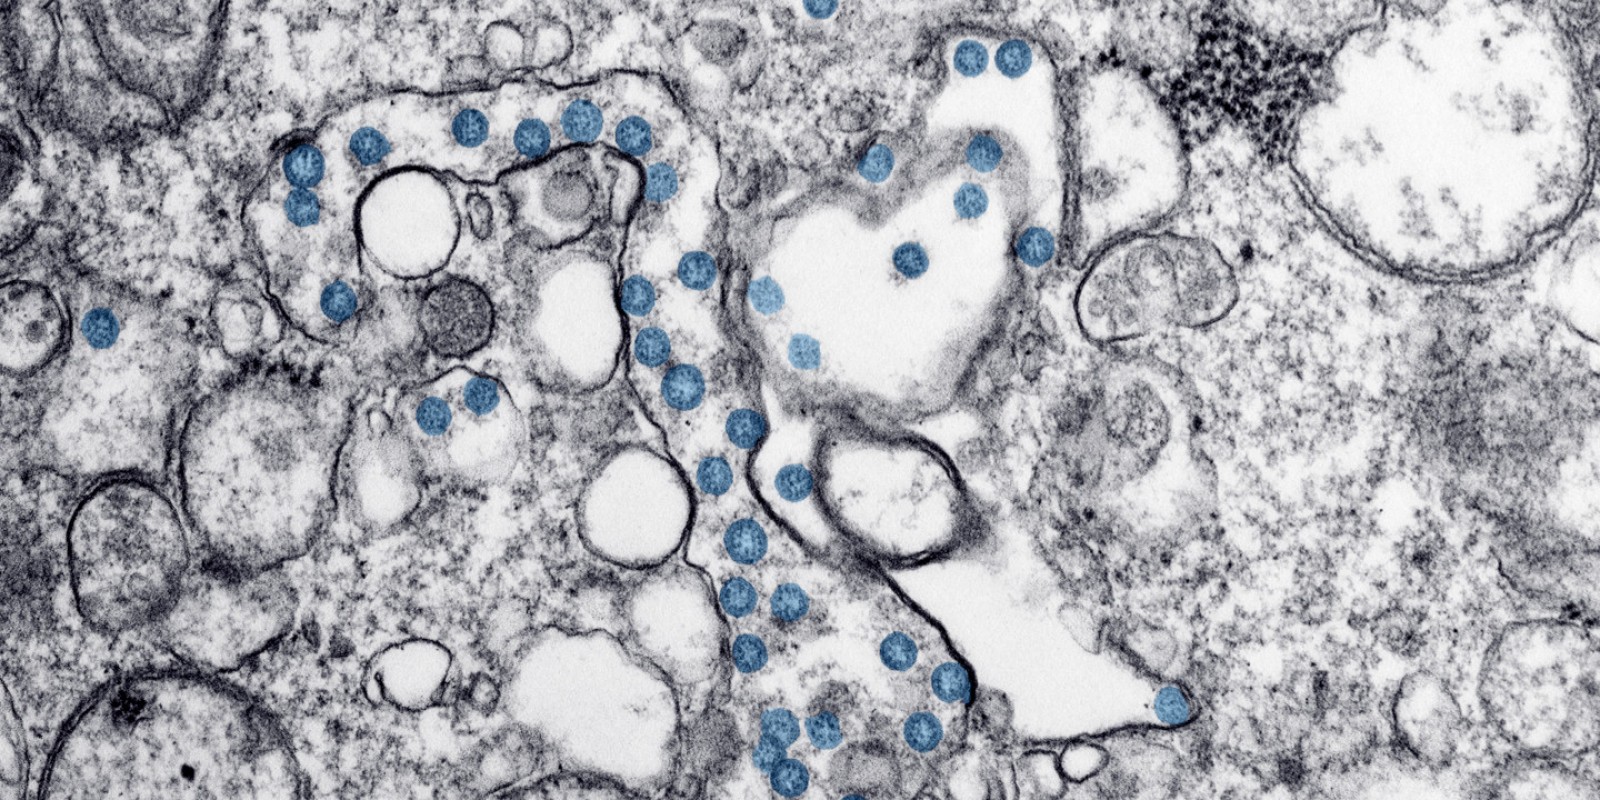  Image au microscope d'un cas de COVID-19